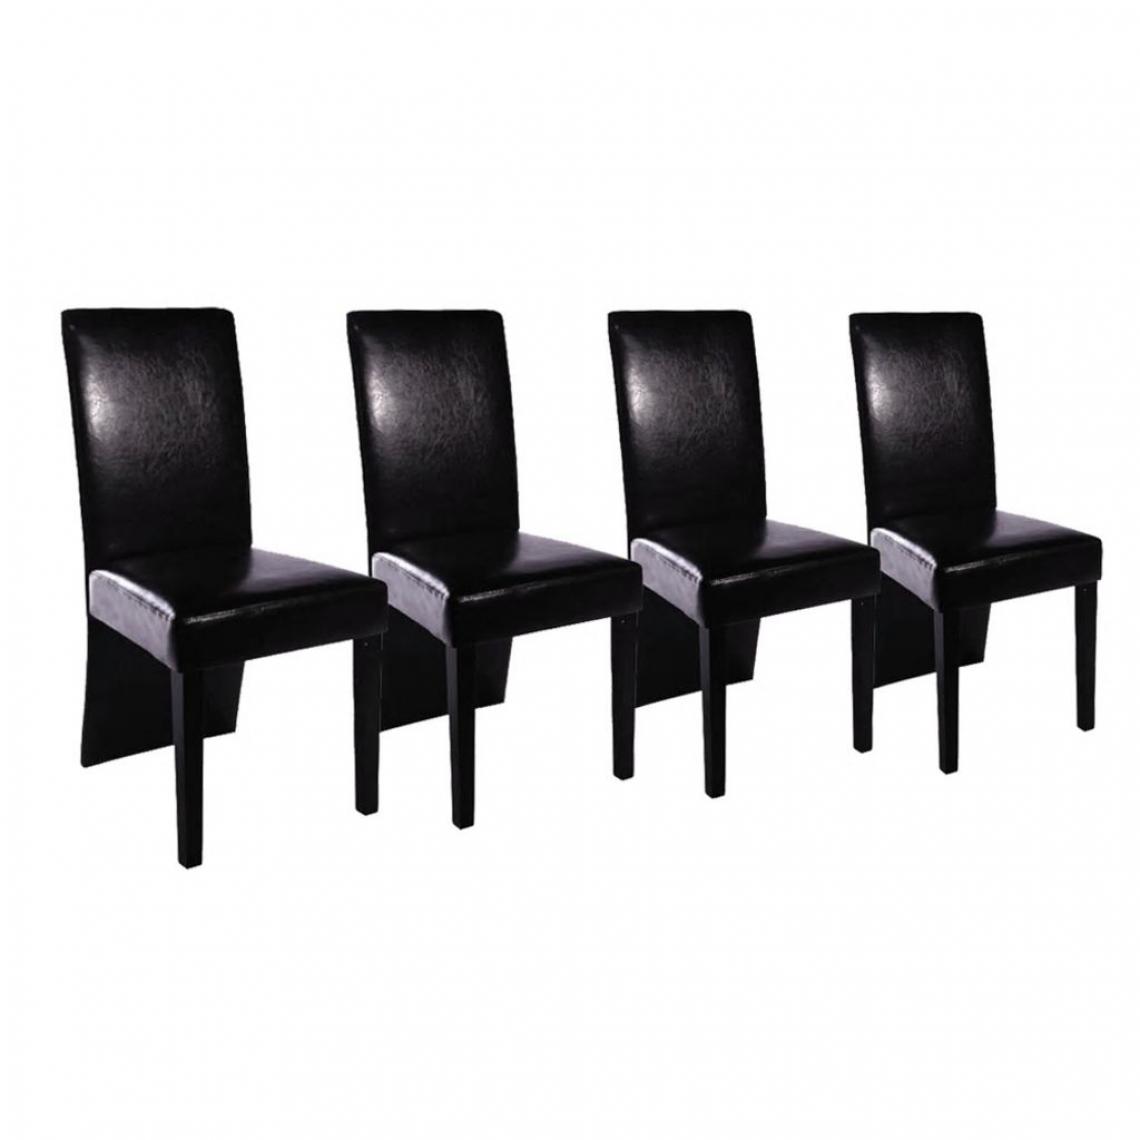 Decoshop26 - Lot de 4 chaises de salle à manger cuisine design moderne en similicuir noir CDS021828 - Chaises